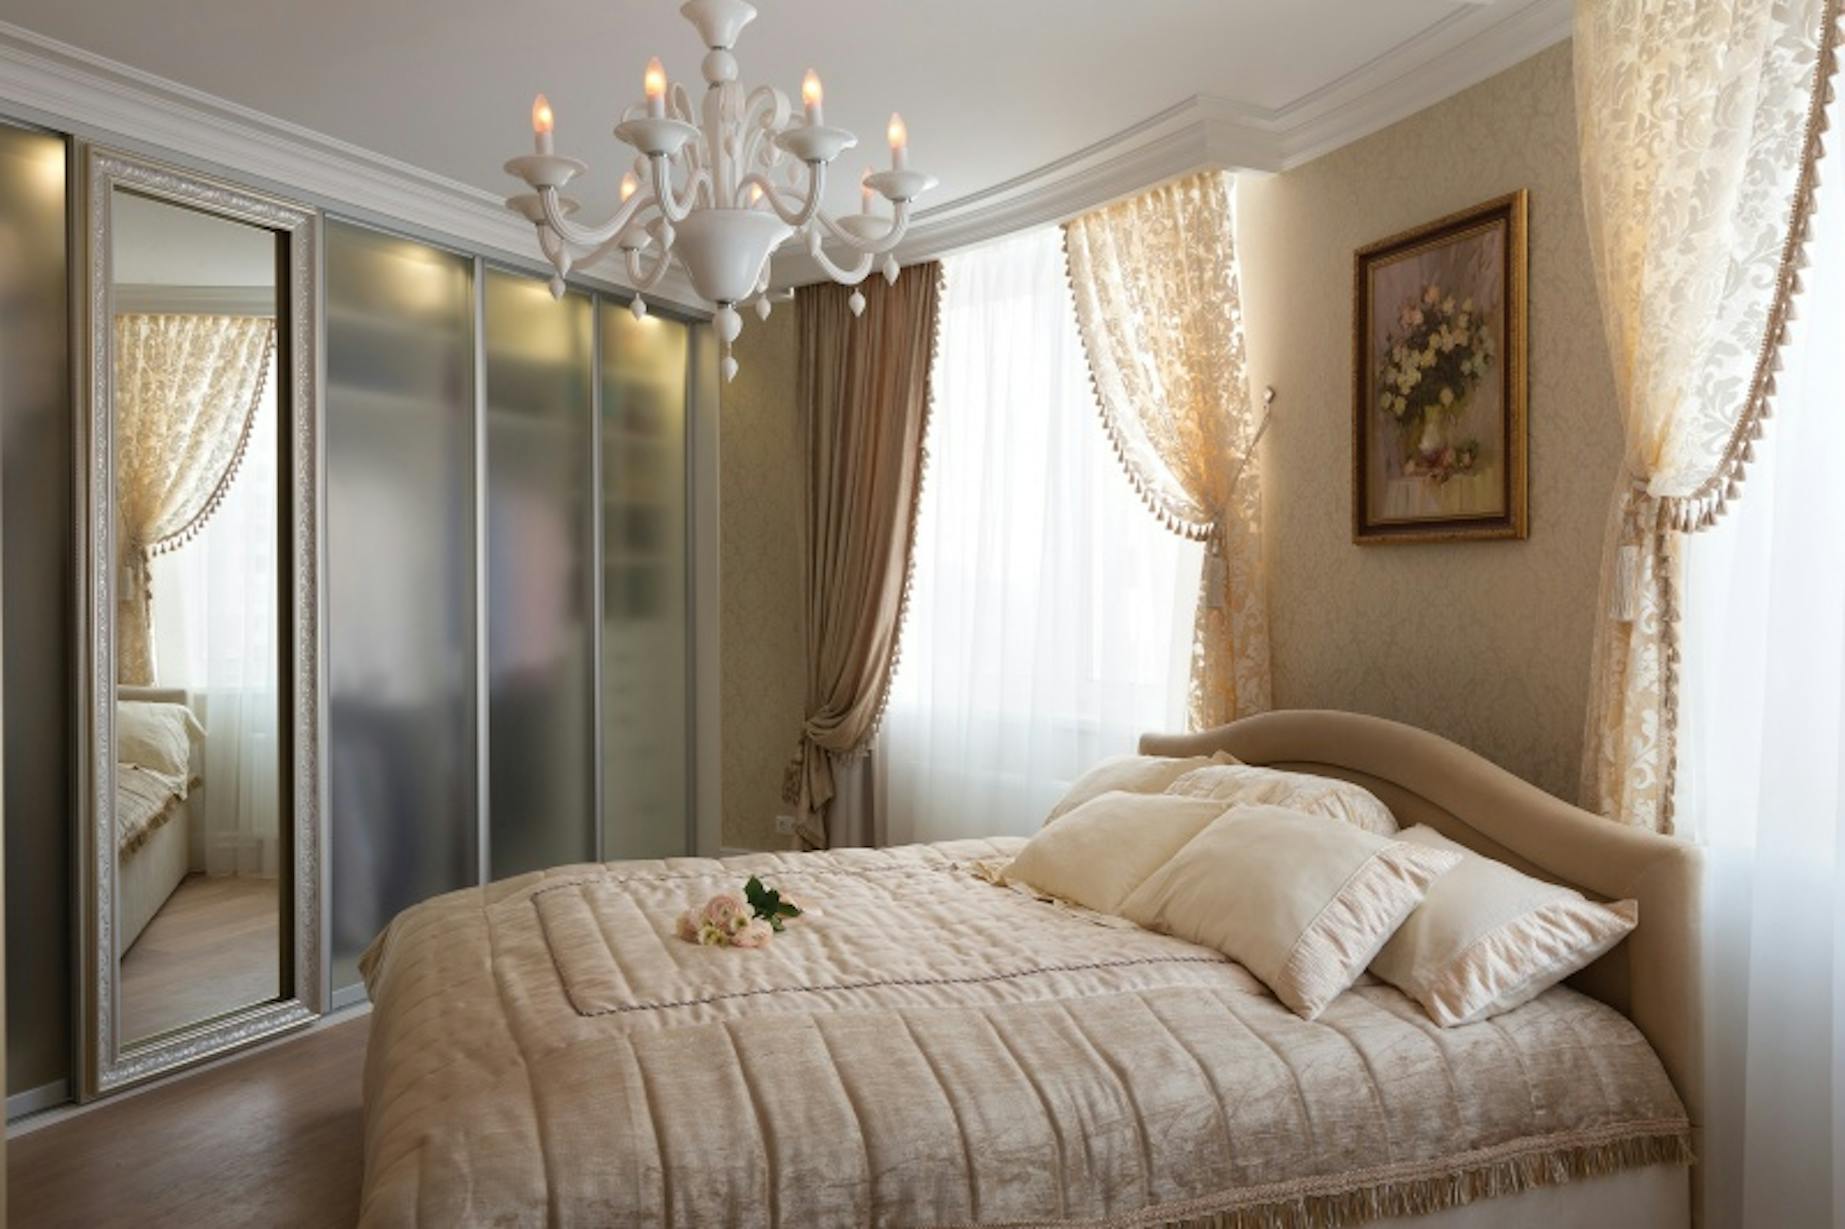 Спальня французский стиль Люкс Ритц. Дизайн спальни в светлых тонах классический стиль. Зеркало напротив кровати в спальне. Бежевые классические шторы в спальню.